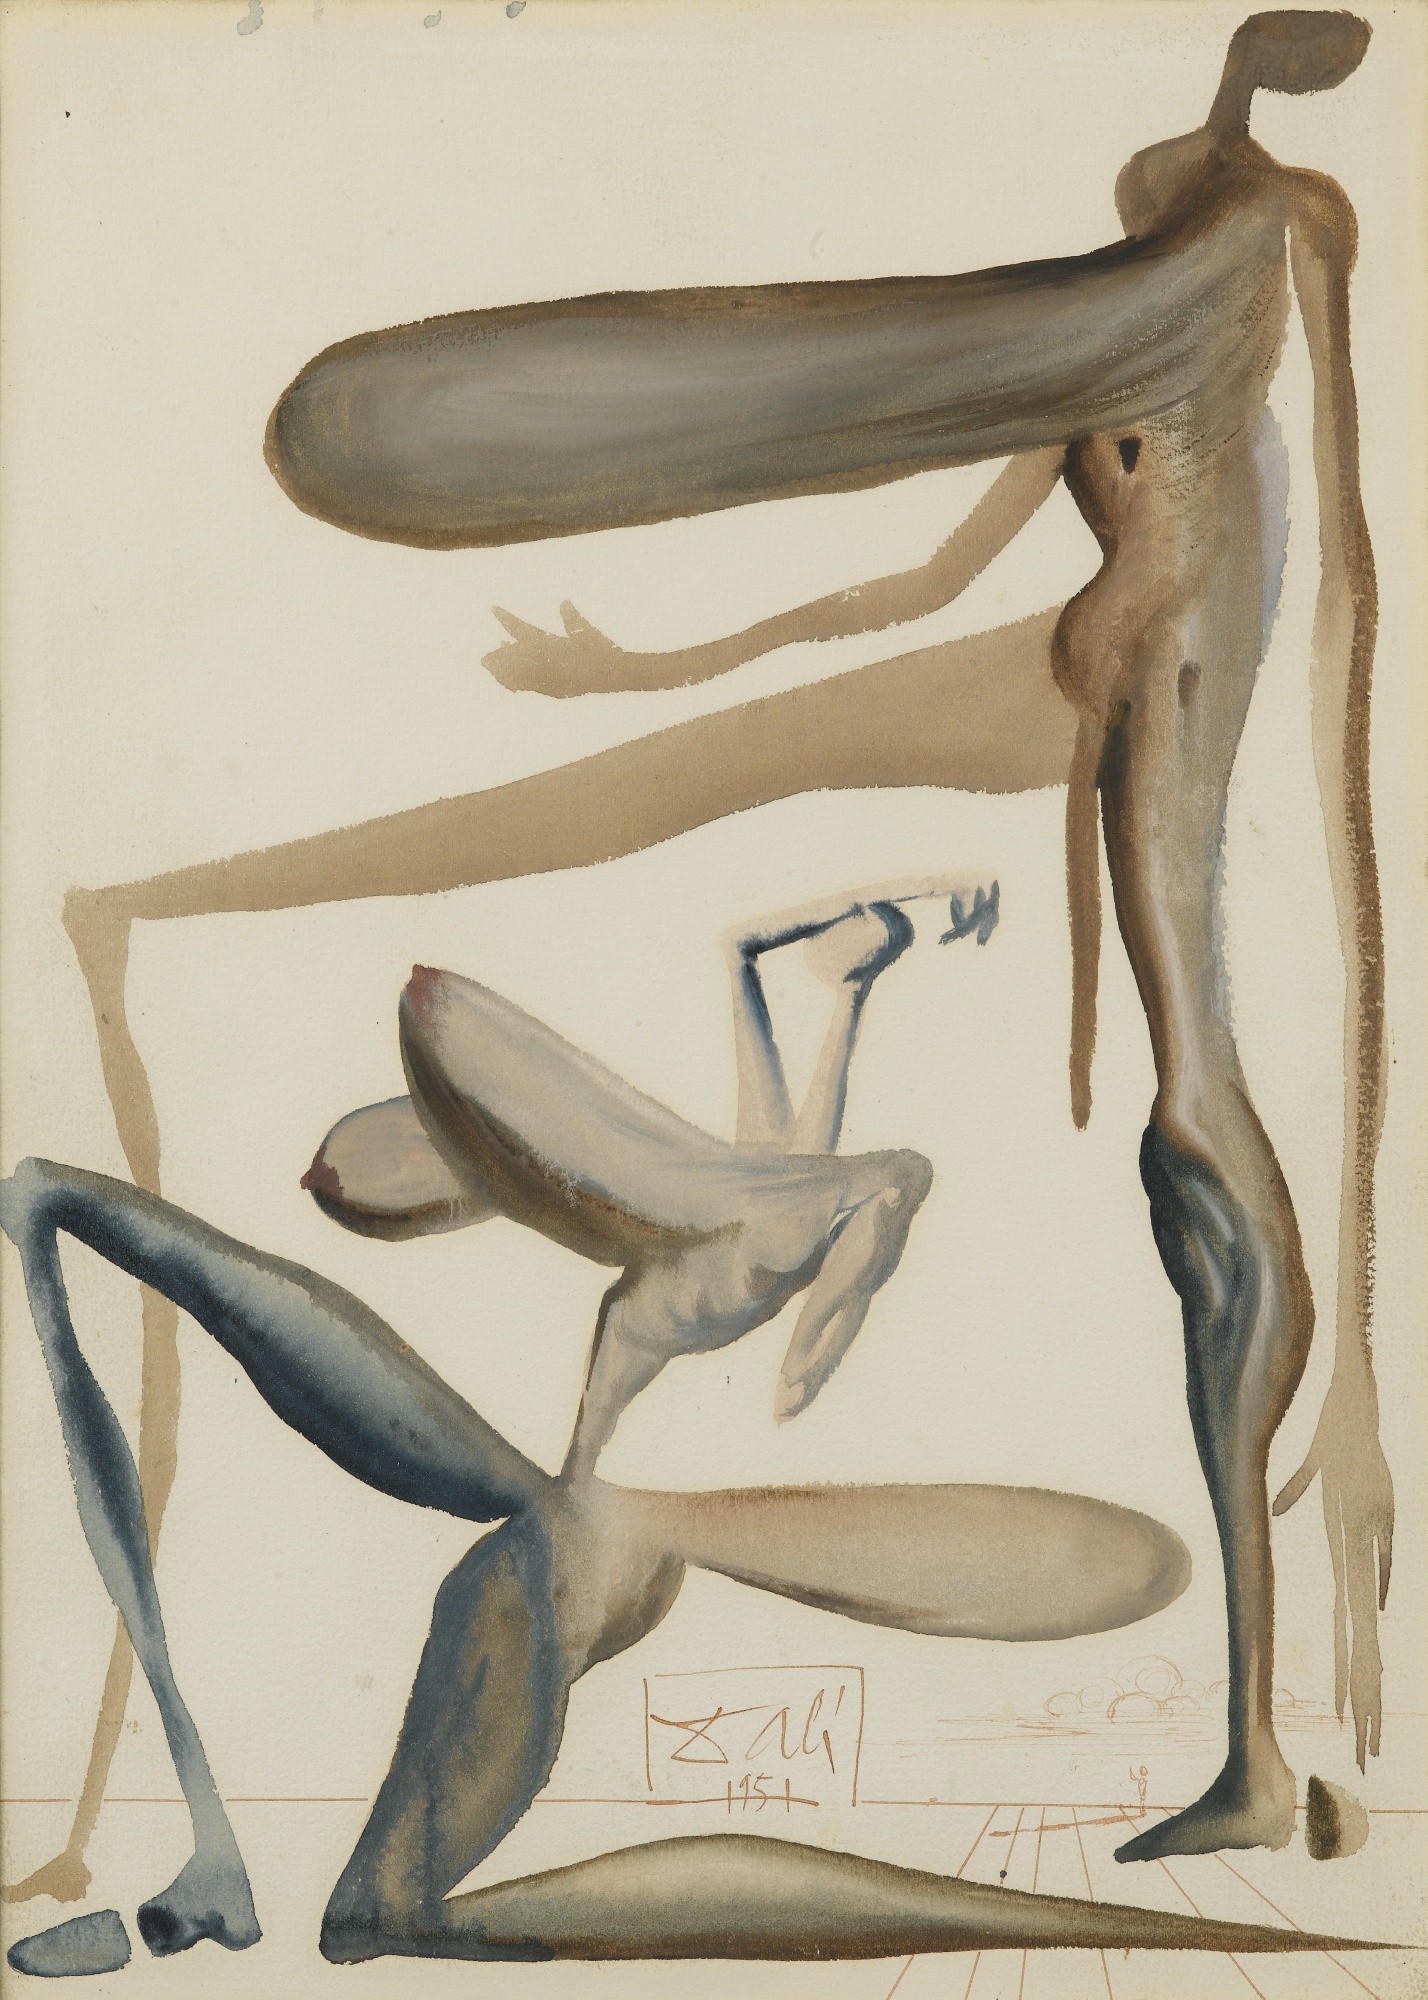 Artwork by Salvador Dalí, LA PRODIGALITÉ, ILLUSTRATION POUR LE PURGATOIRE, CHANT 22 POUR L'OUVRAGE DE DANTE ILLUSTRÉ PAR SALVADOR DALÍ, LA DIVINE COMÉDIE (1959-1963), Made of gouache, watercolor, pen and sepia ink on paper